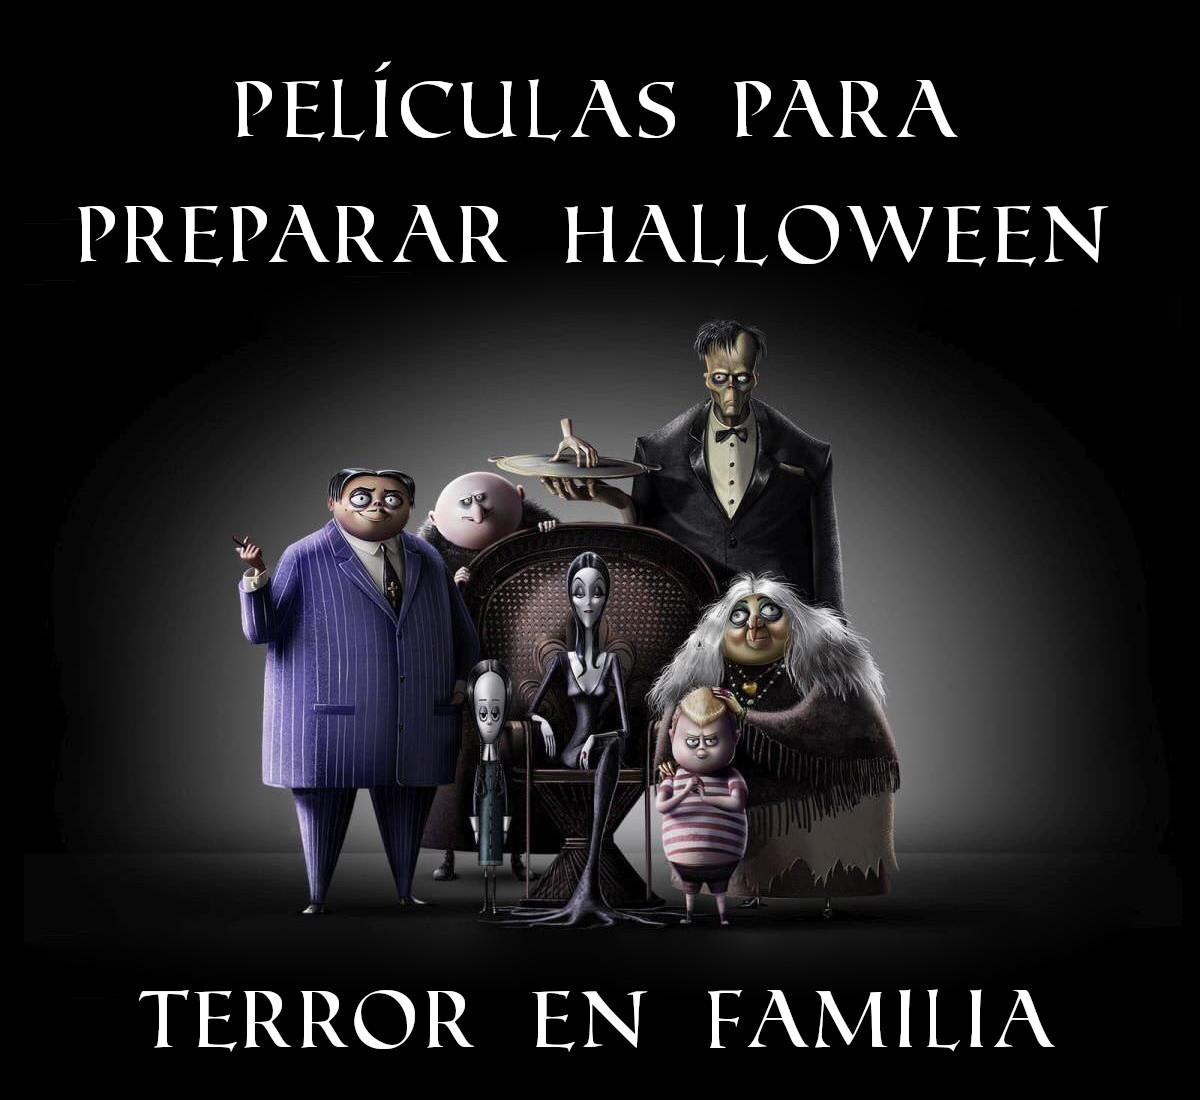 Imagen con fondo negro de la familia Addams, en su versión de animación, posando. Arriba, viene escrito «Películas para preparar Halloween»; abajo, «terror en familia»